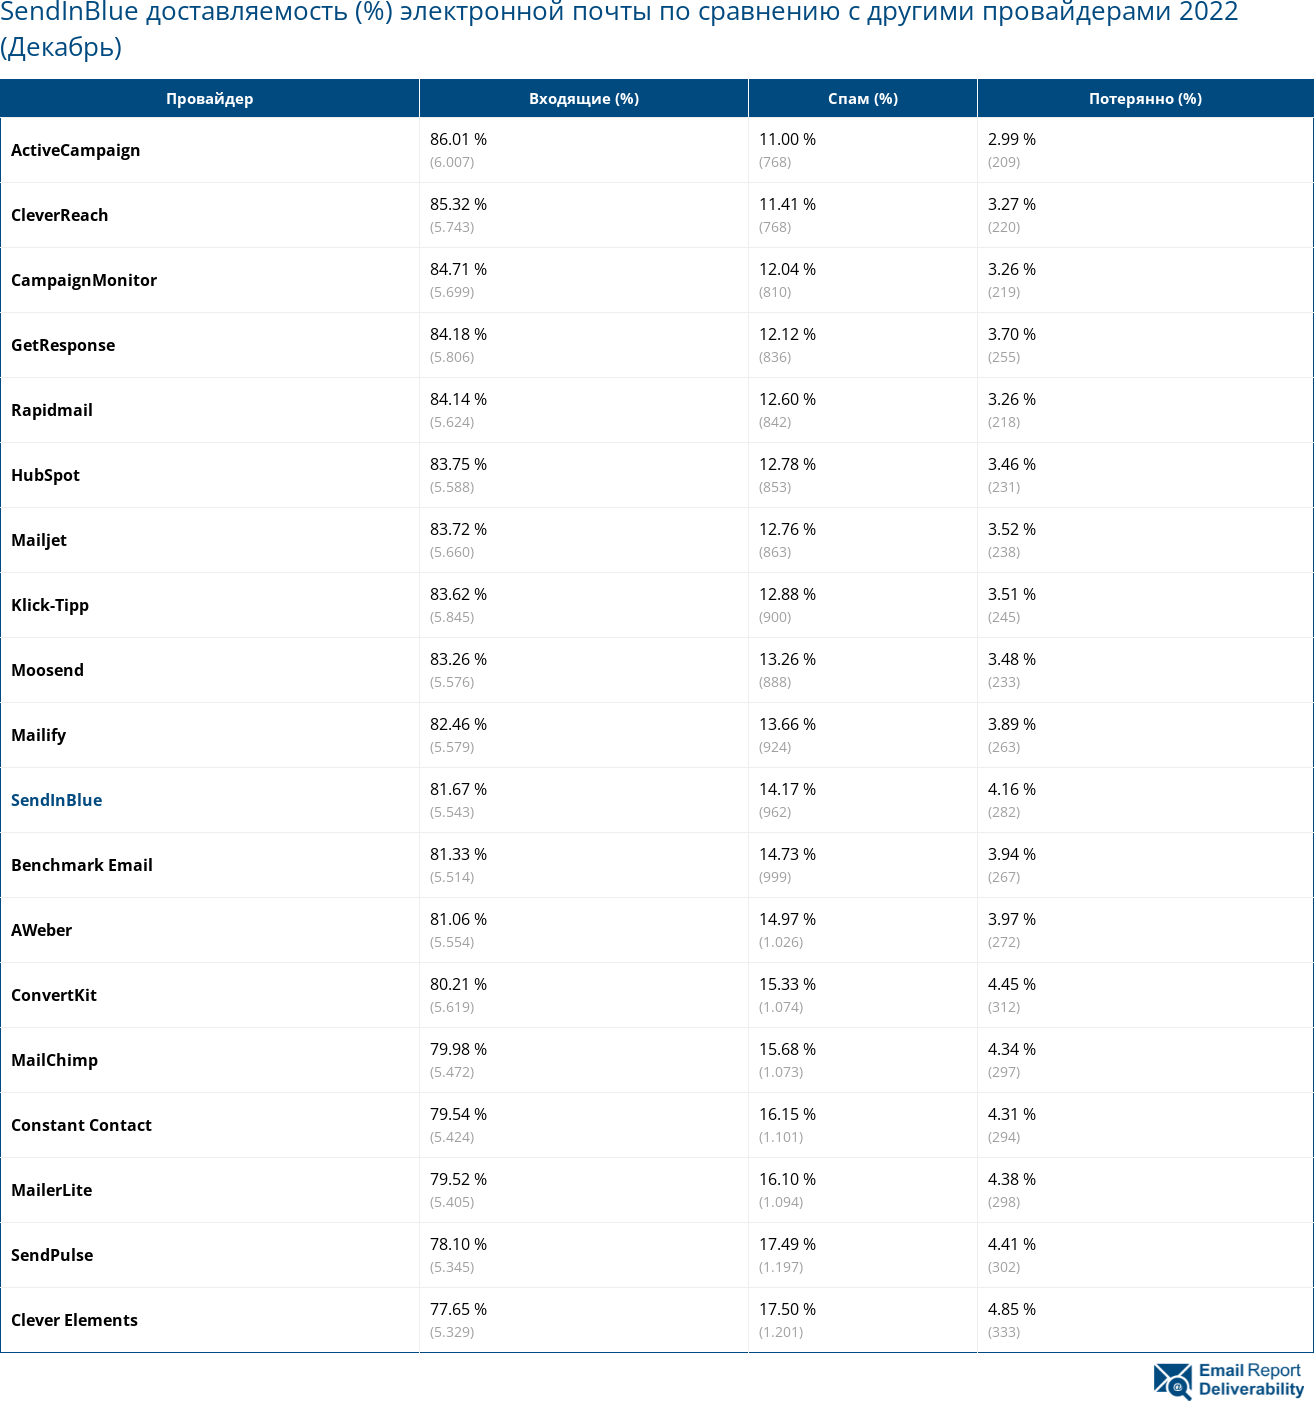 SendInBlue доставляемость (%) электронной почты по сравнению с другими провайдерами 2022 (Декабрь)